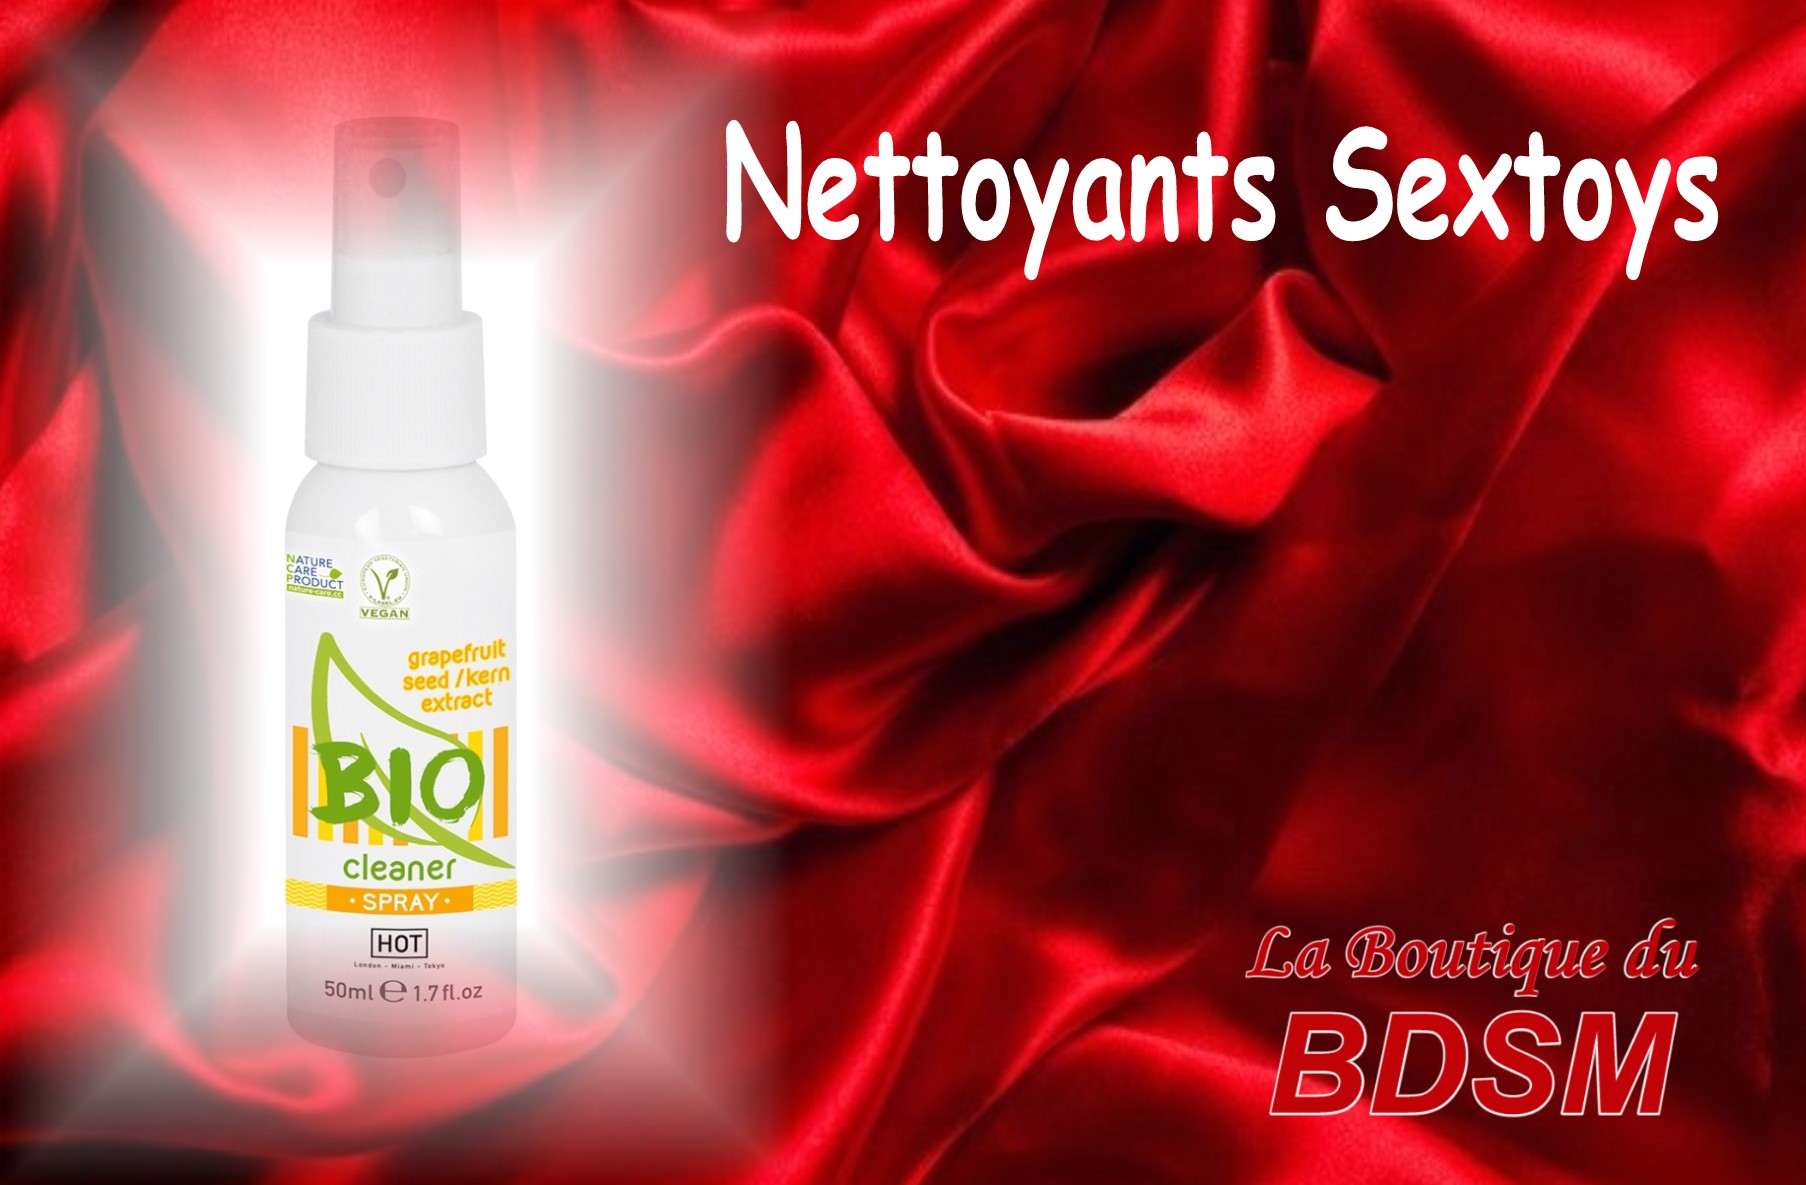 NETTOYANT SEX-TOYS - LA BOUTIQUE DU BDSM